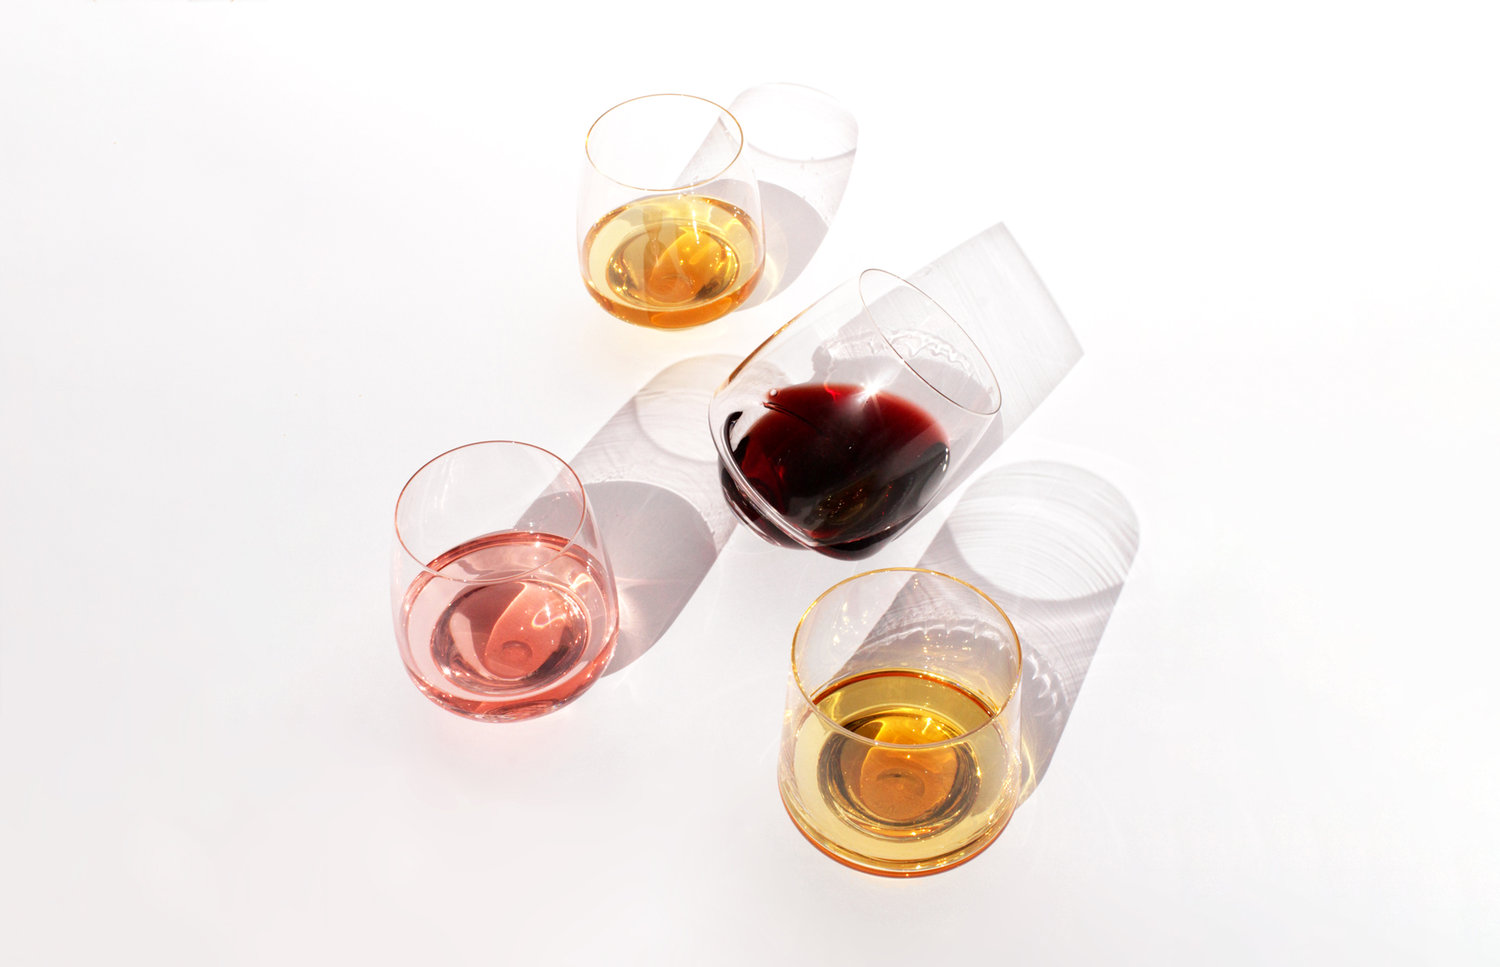 Tip-Proof Wine Glasses : avoid spills